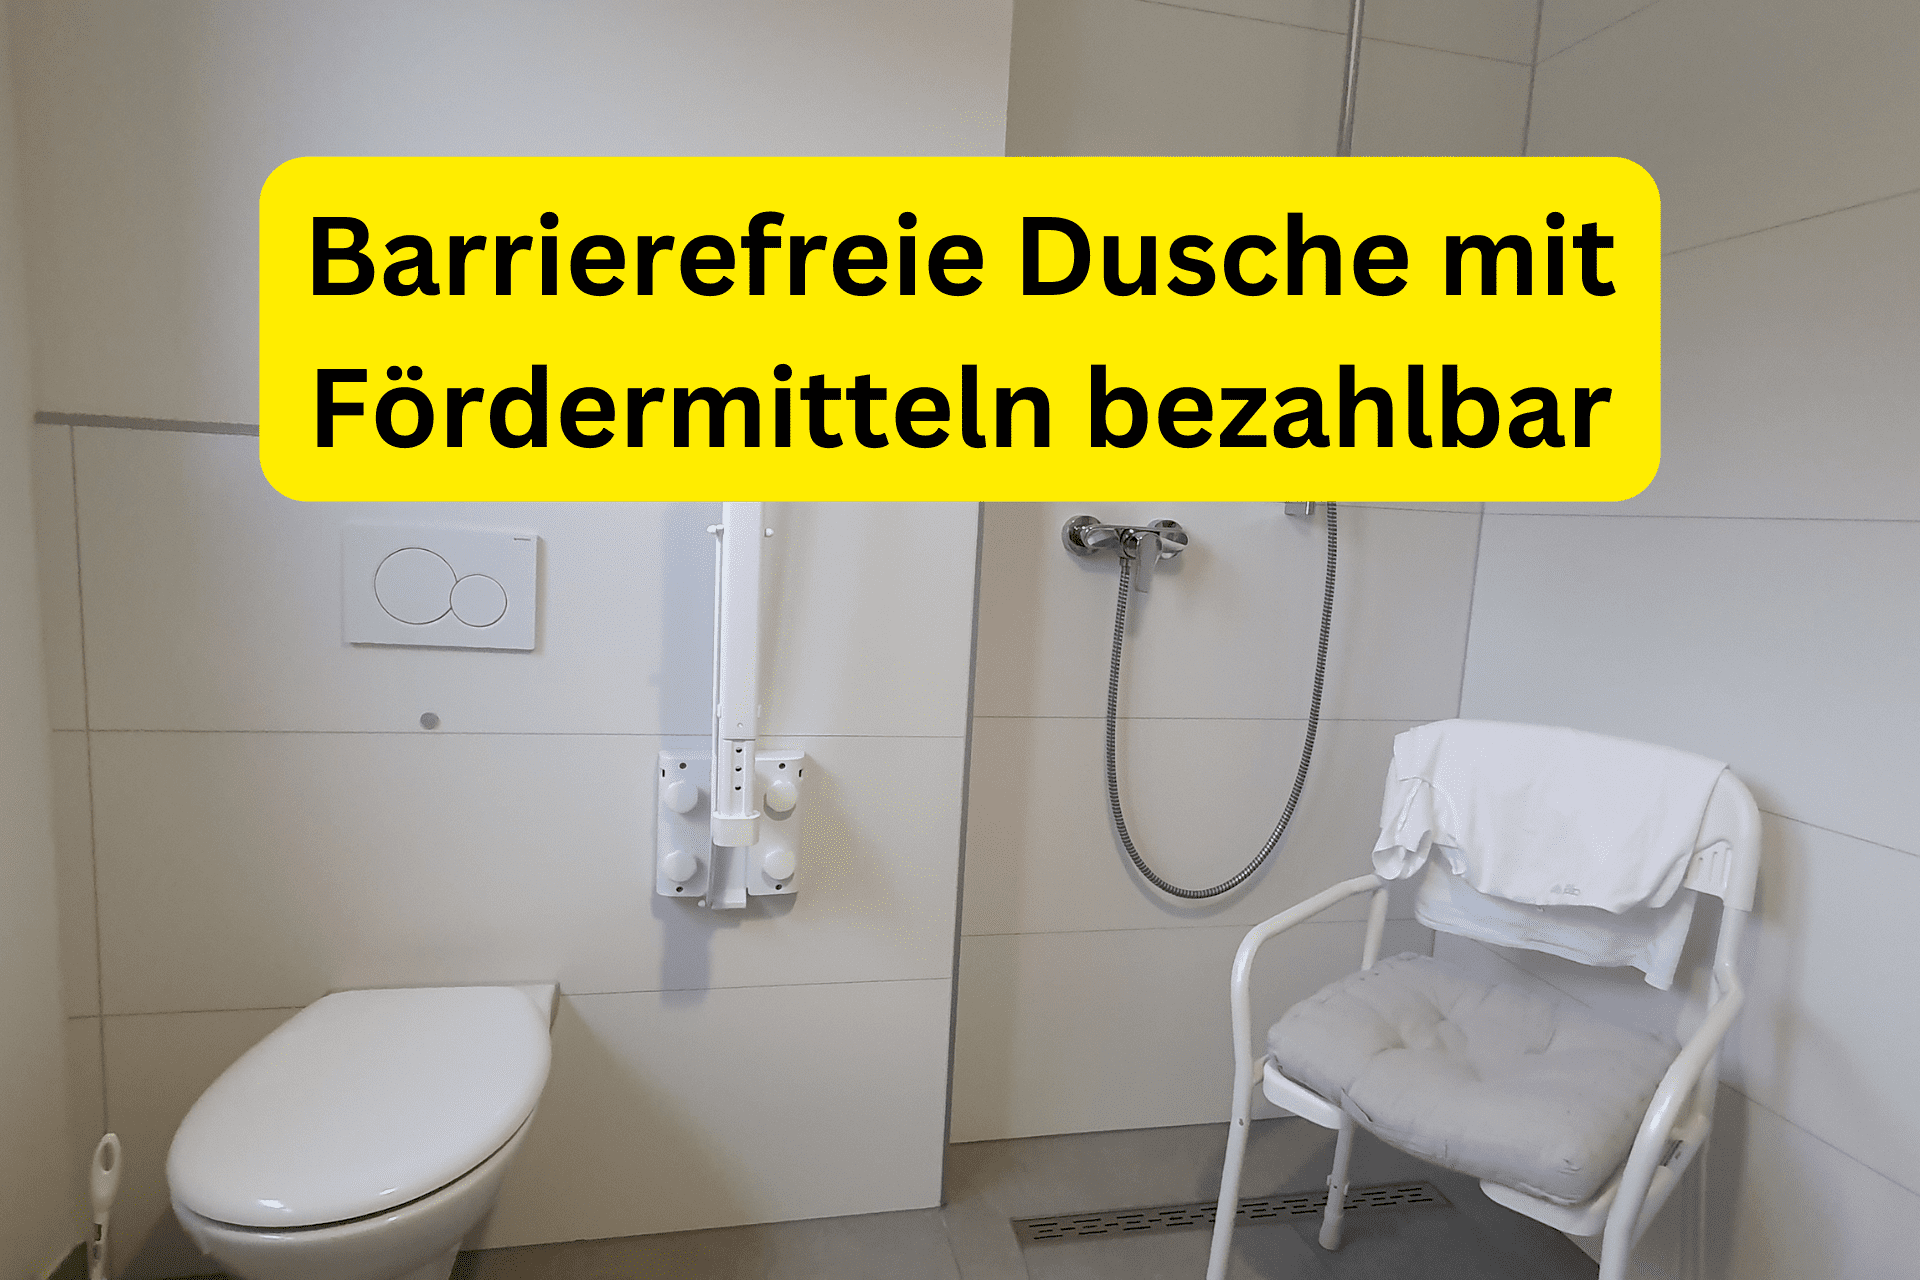 Barrierefreie Dusche mit Fördermitteln bezahlbar